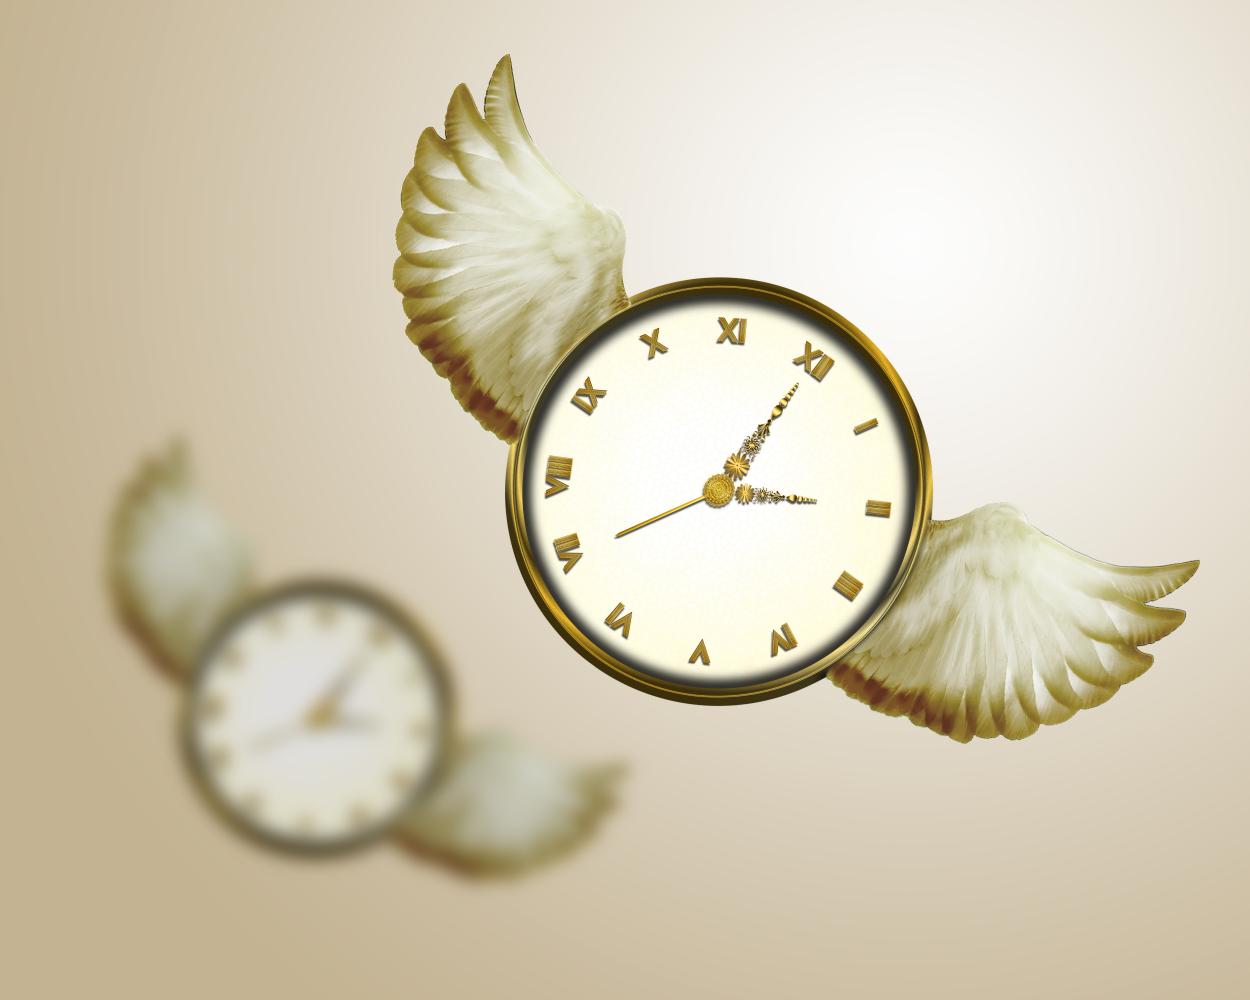 正文 摘要:时间管理对每个人都很重要,浪费时间就是浪费生命.